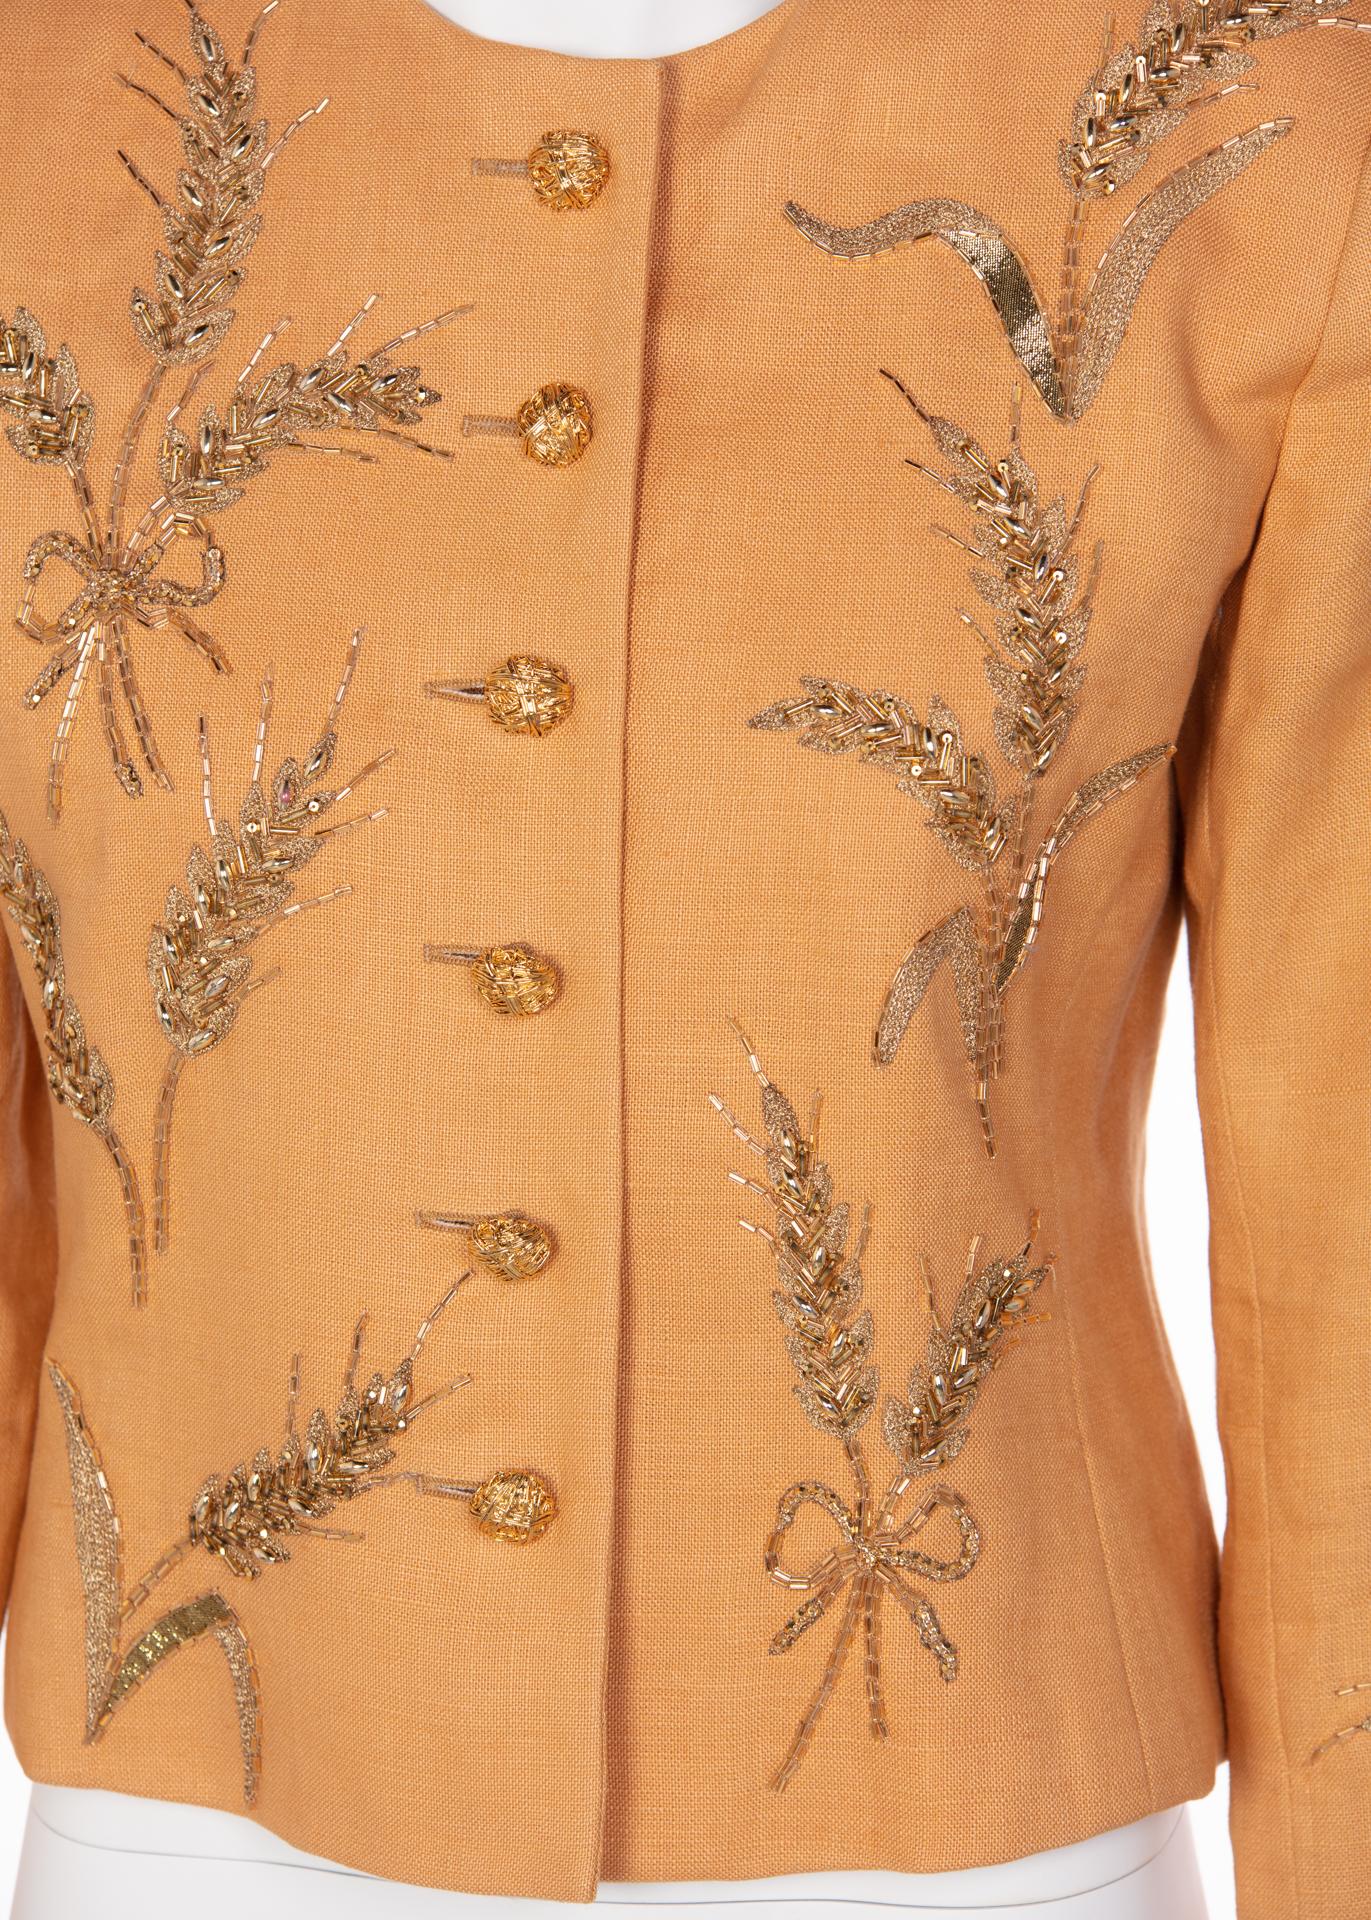 Yves Saint Laurent Gold Beaded Wheat Linen Jacket, 1980s  2